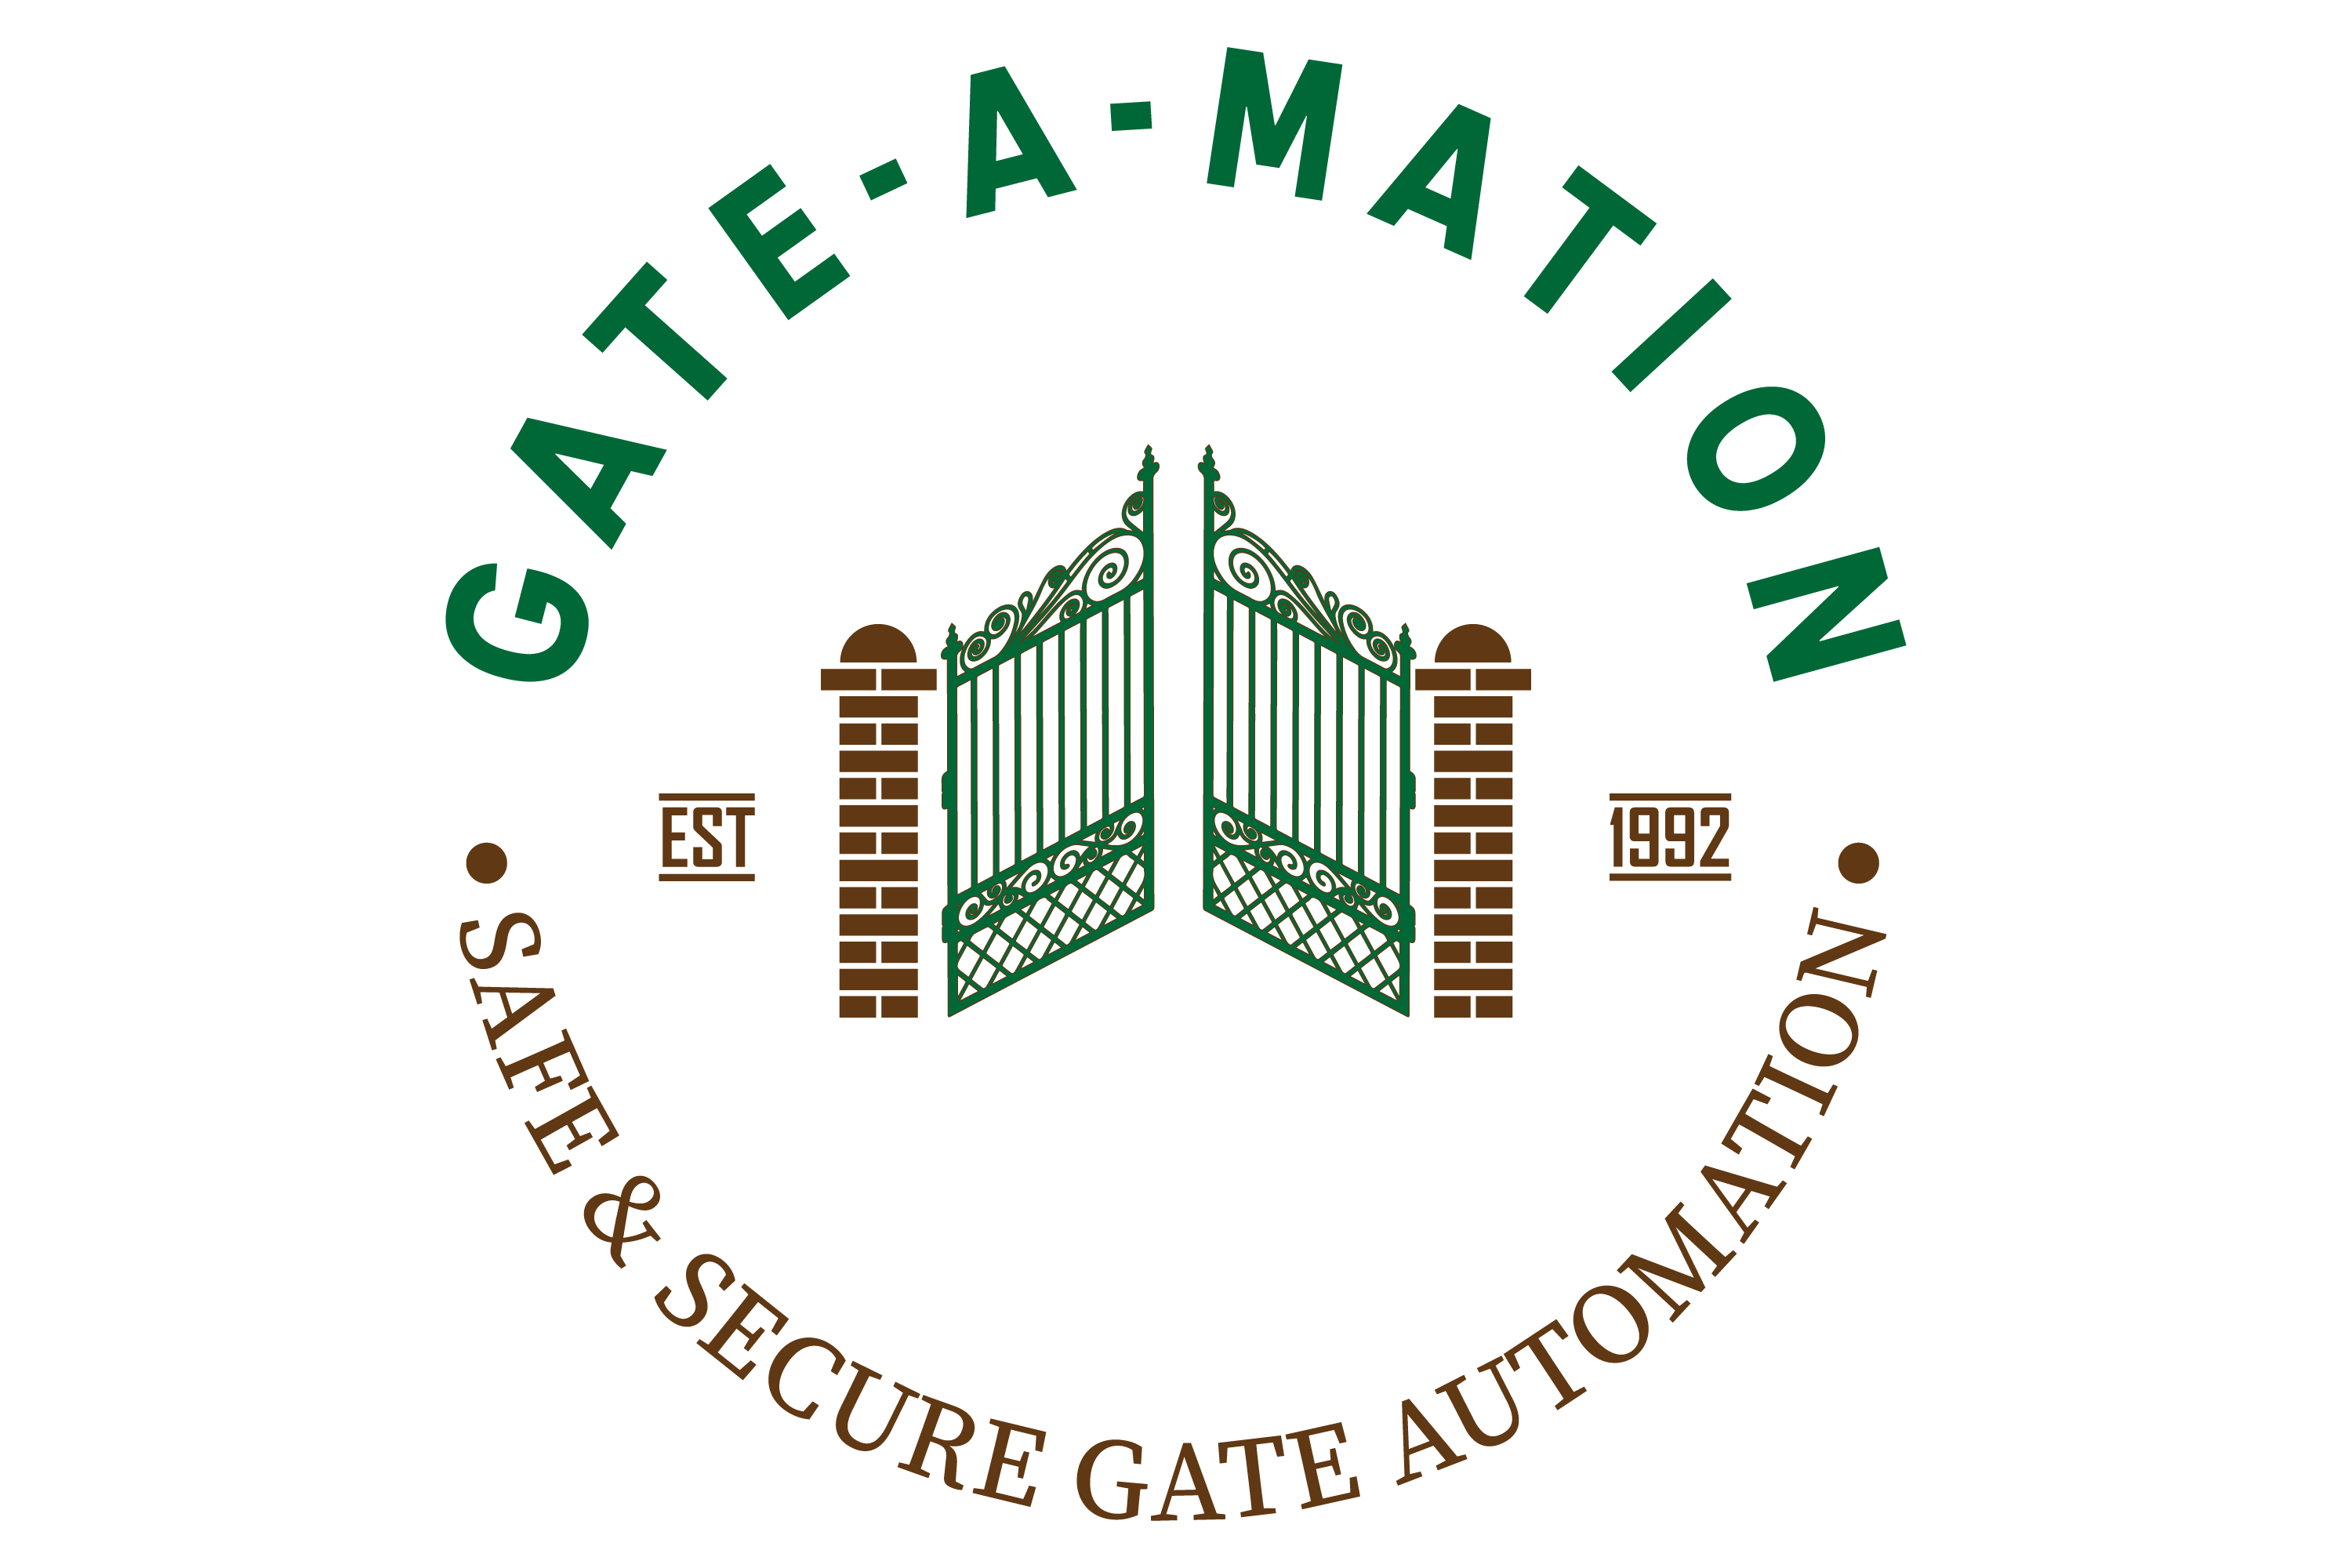 Gate-A-Mation